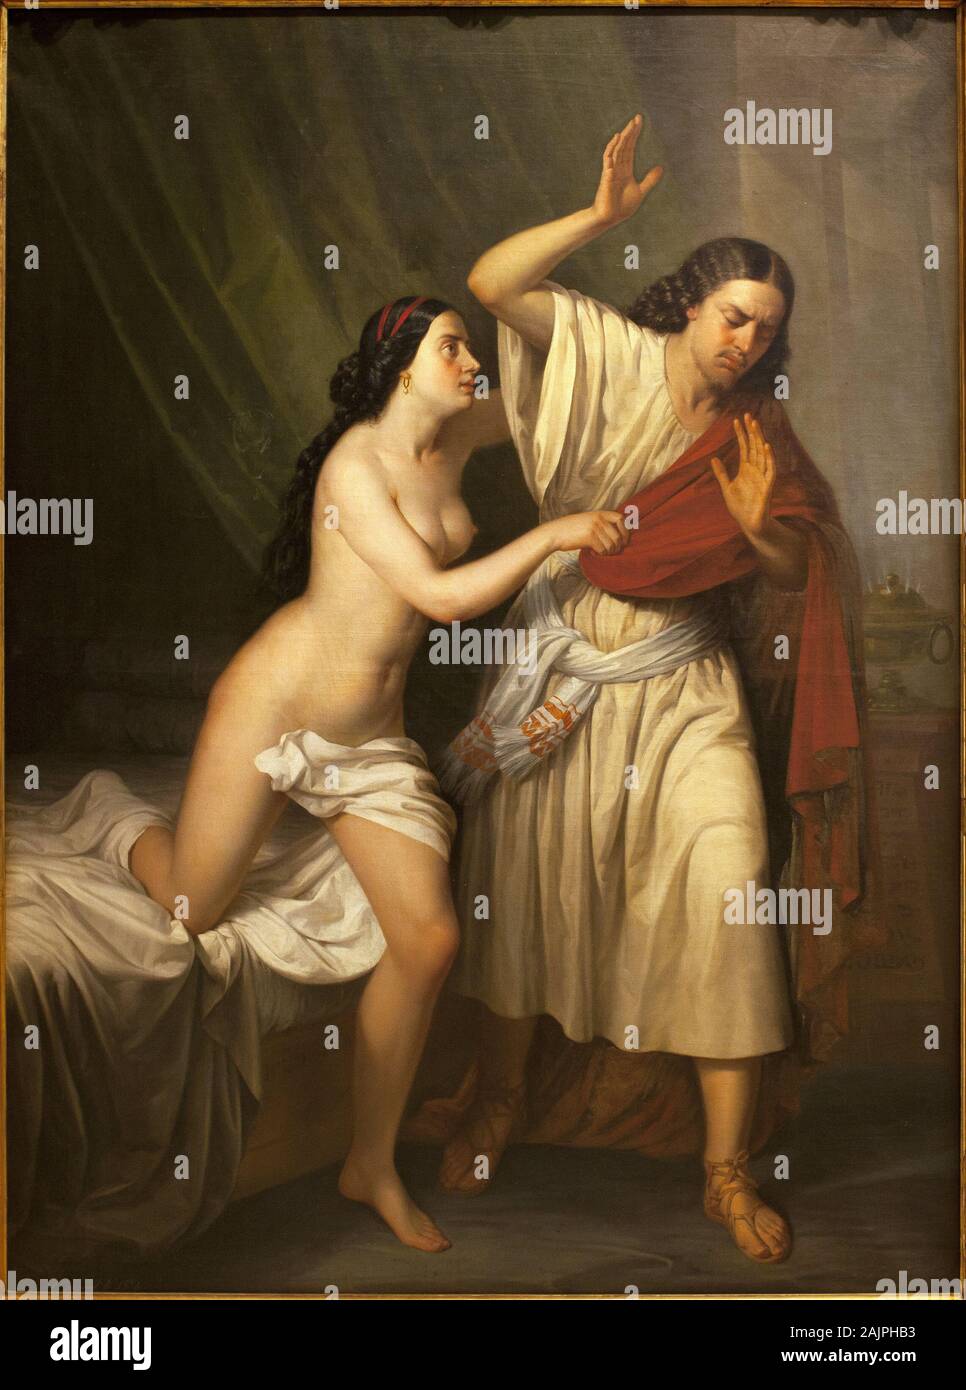 Giuseppe et la femme de Putiphar (Potifar). Peinture de Antonio Esquivel (1806-1857), Huile sur toile, 1854. Musee des Beaux Arts de Seville, espagne. Foto Stock